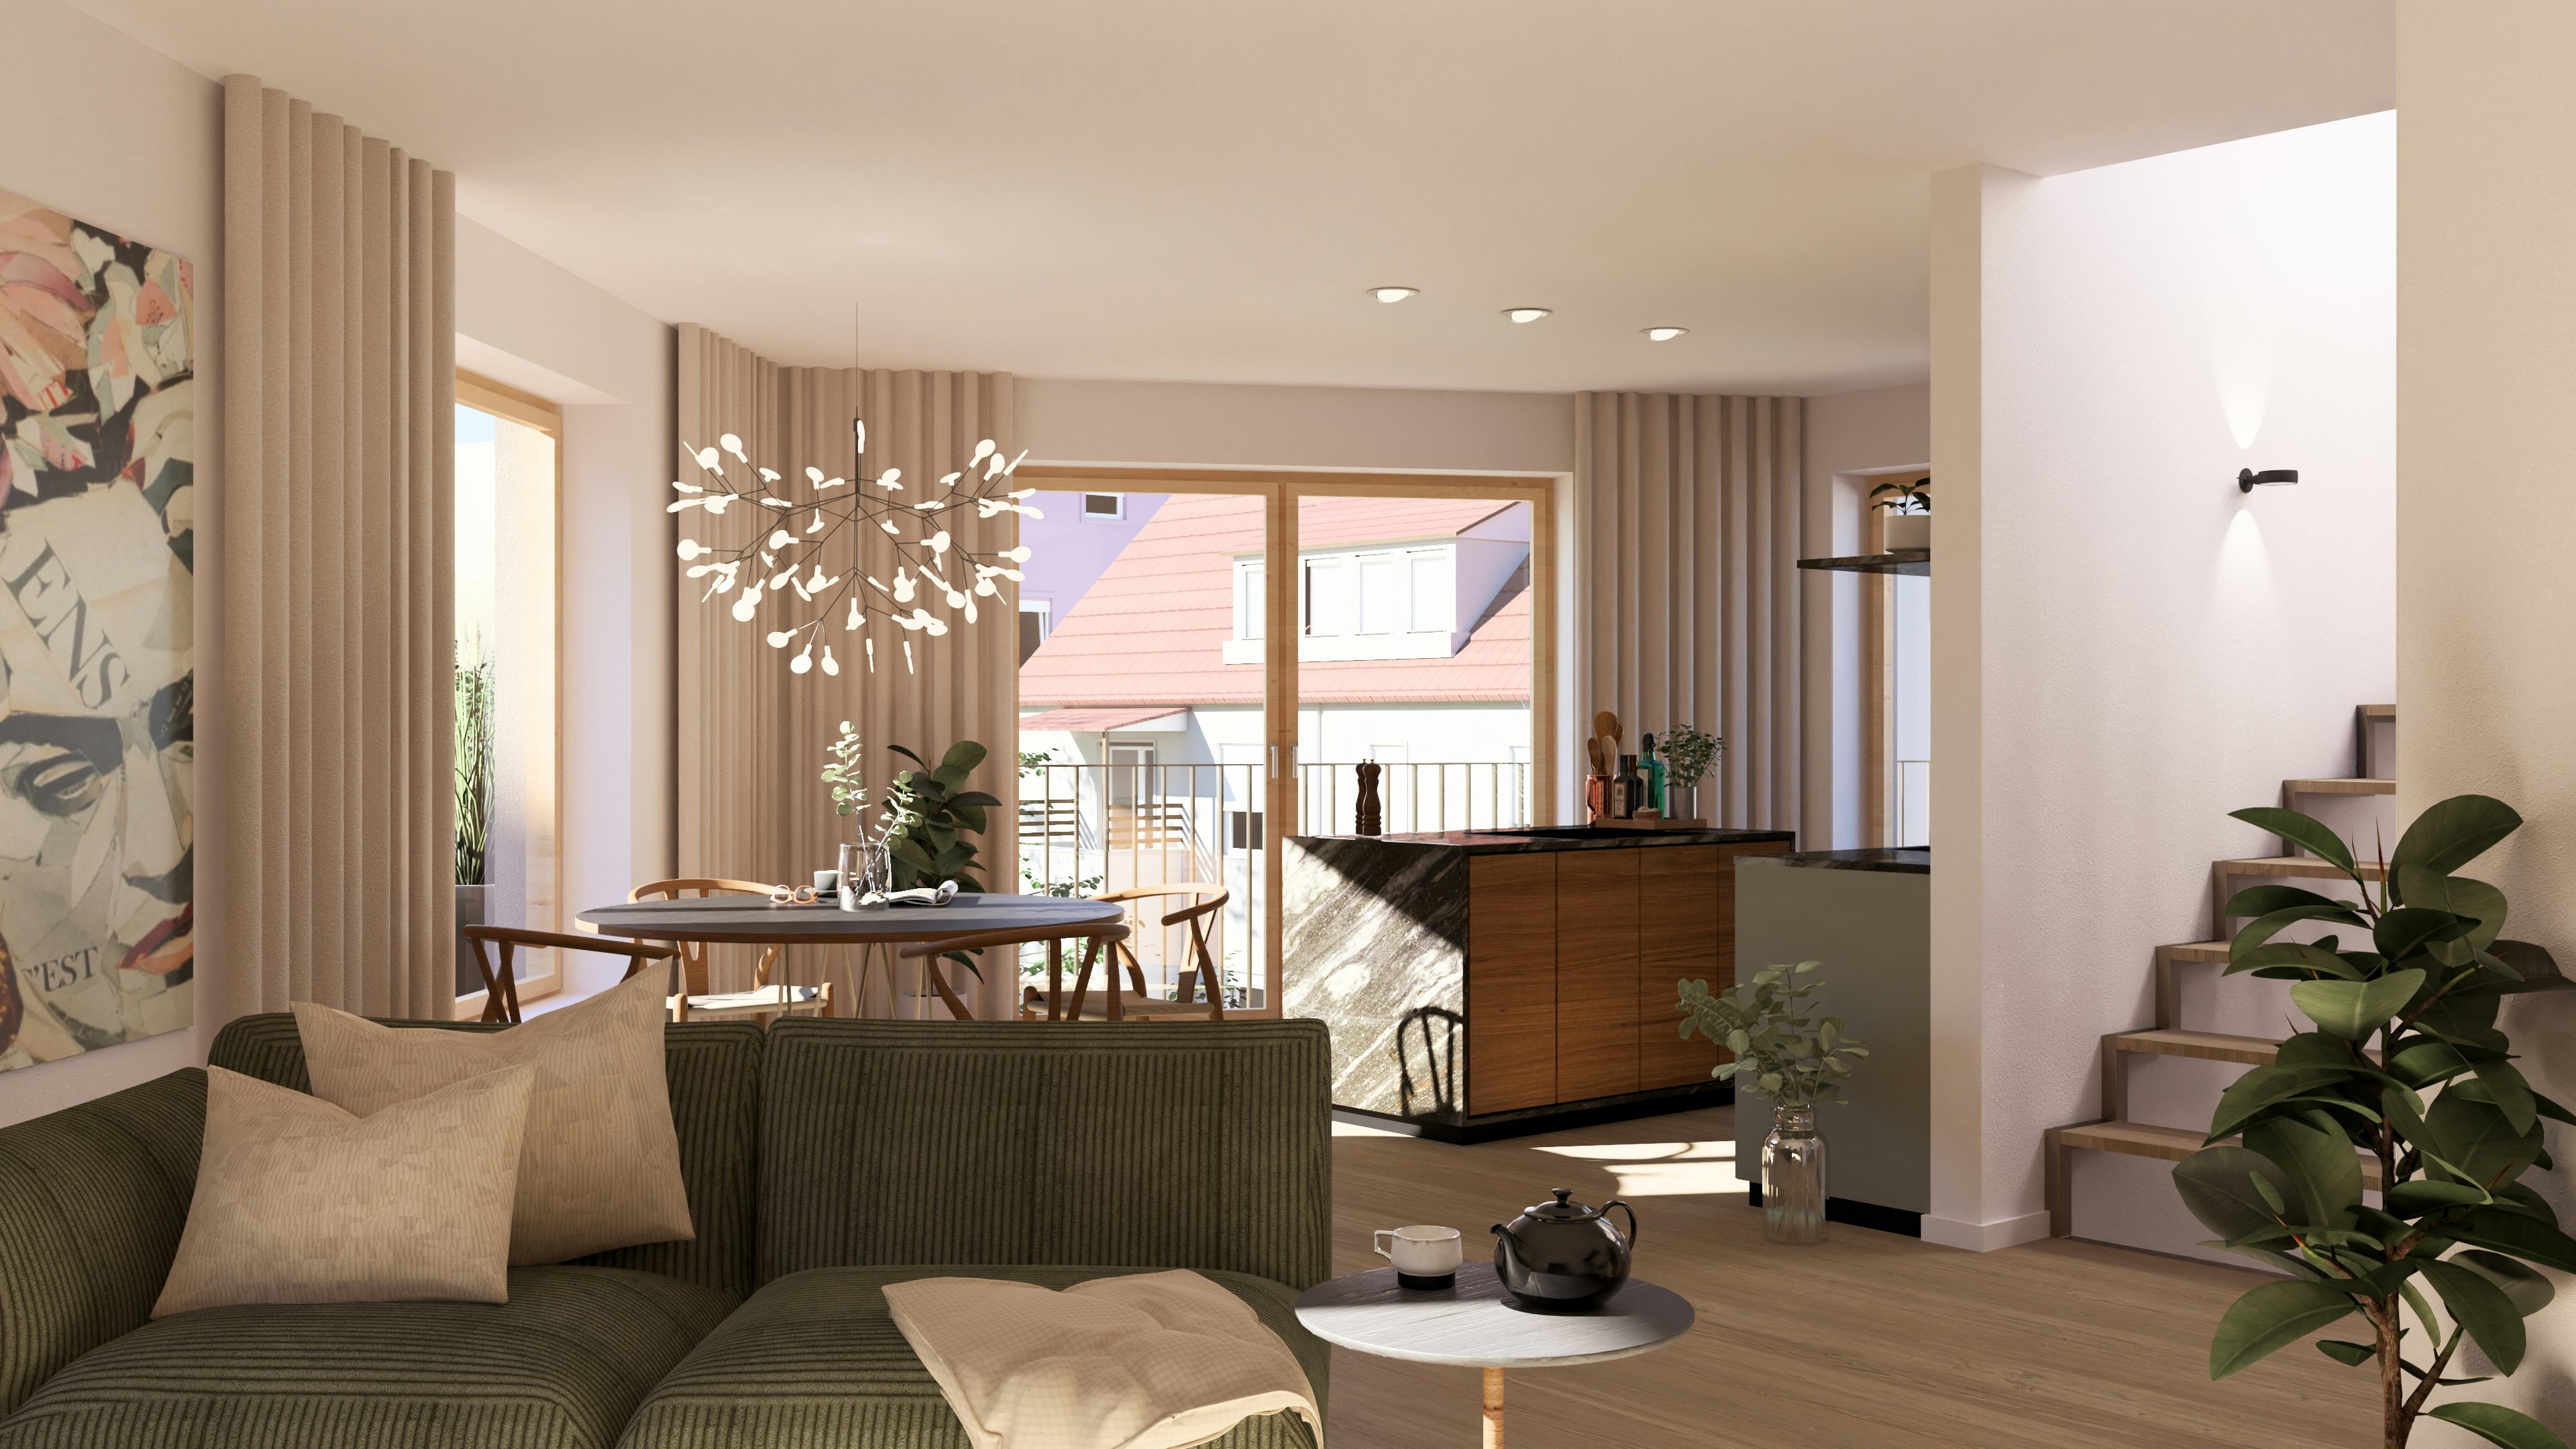 Sternhof-Immobilie, Regensburg: Visualisierung Küche einer Maisonette-Wohnung mit Wohn- und Essbereich sowie Zugang zum Balkon